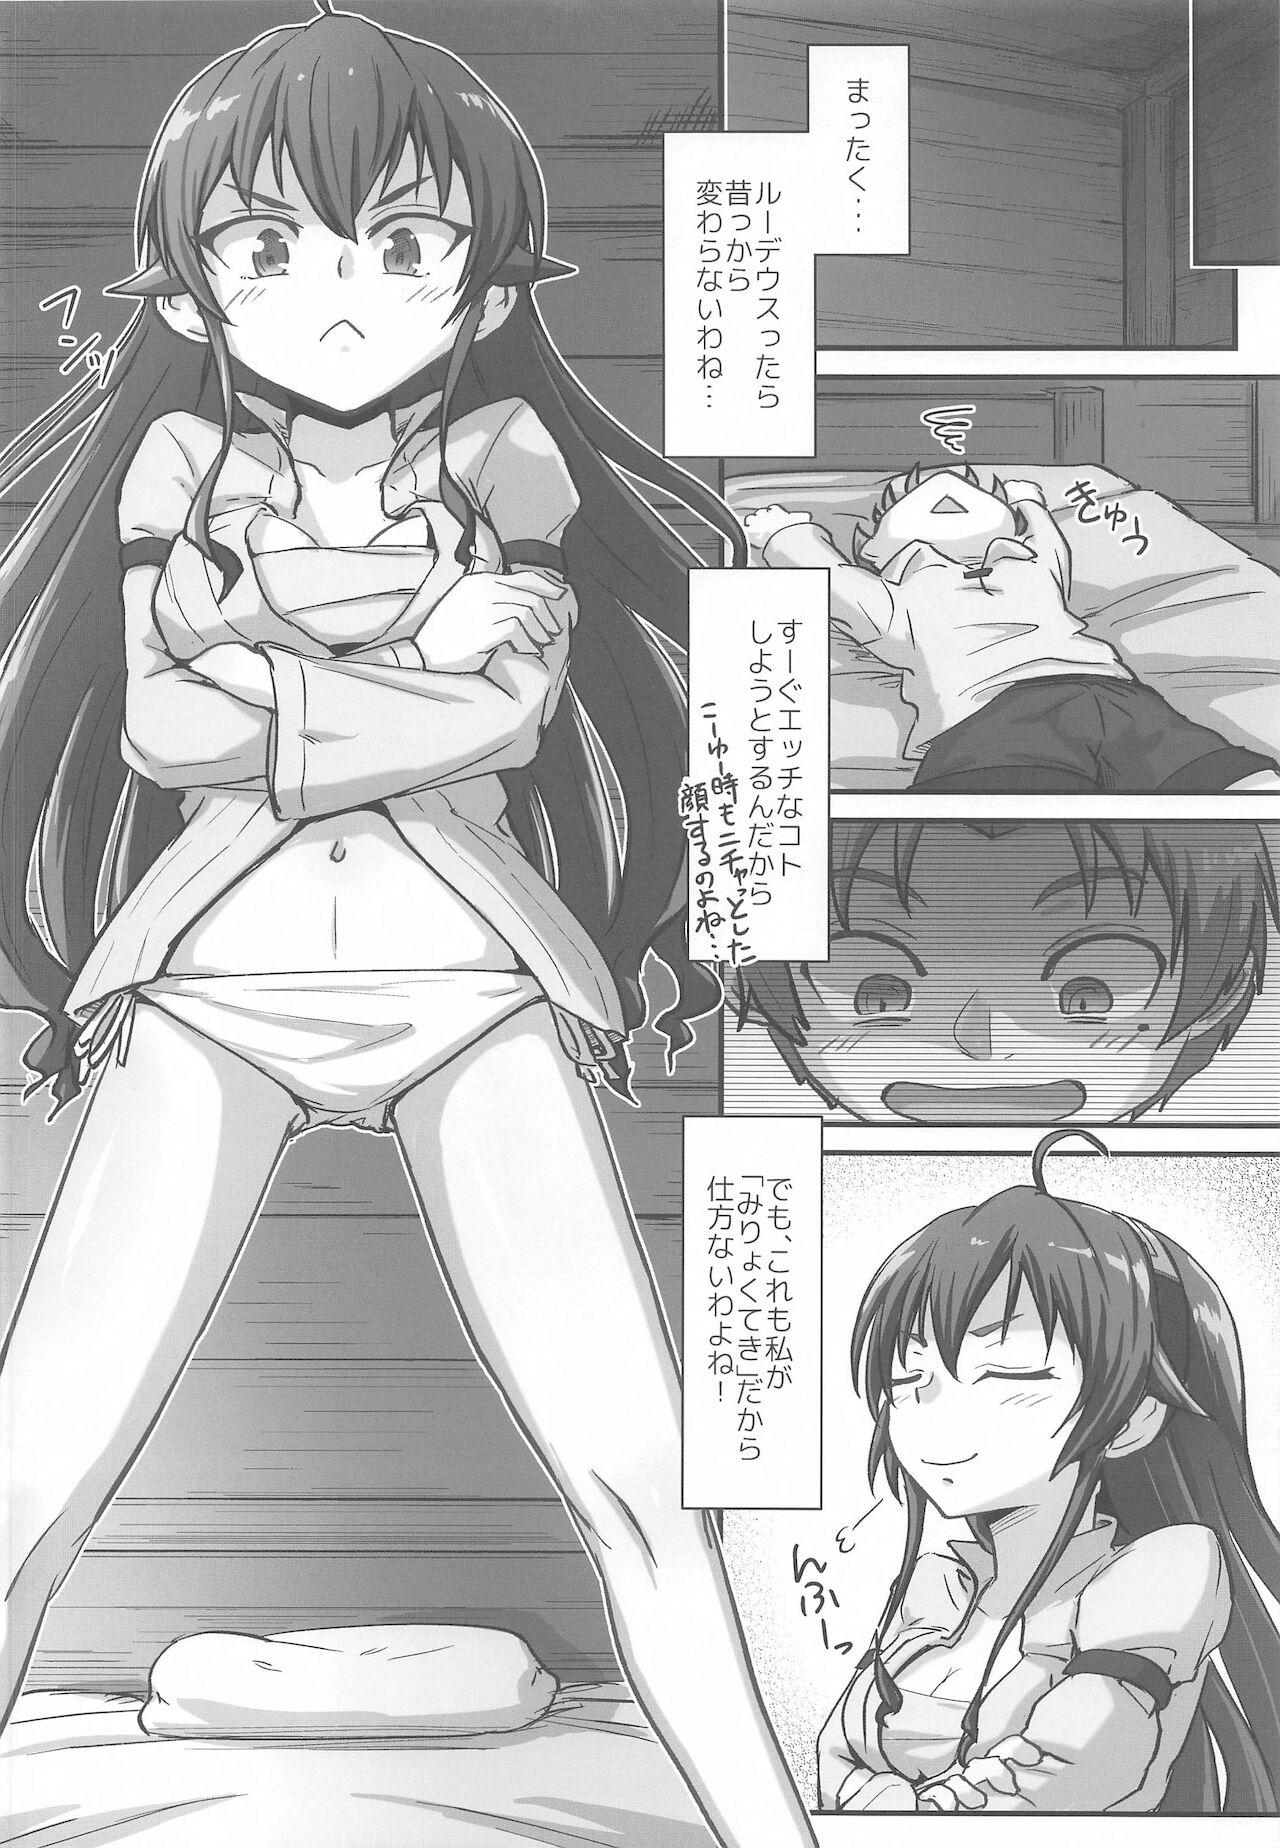 Classroom mushoku! - Mushoku tensei Virtual - Page 7